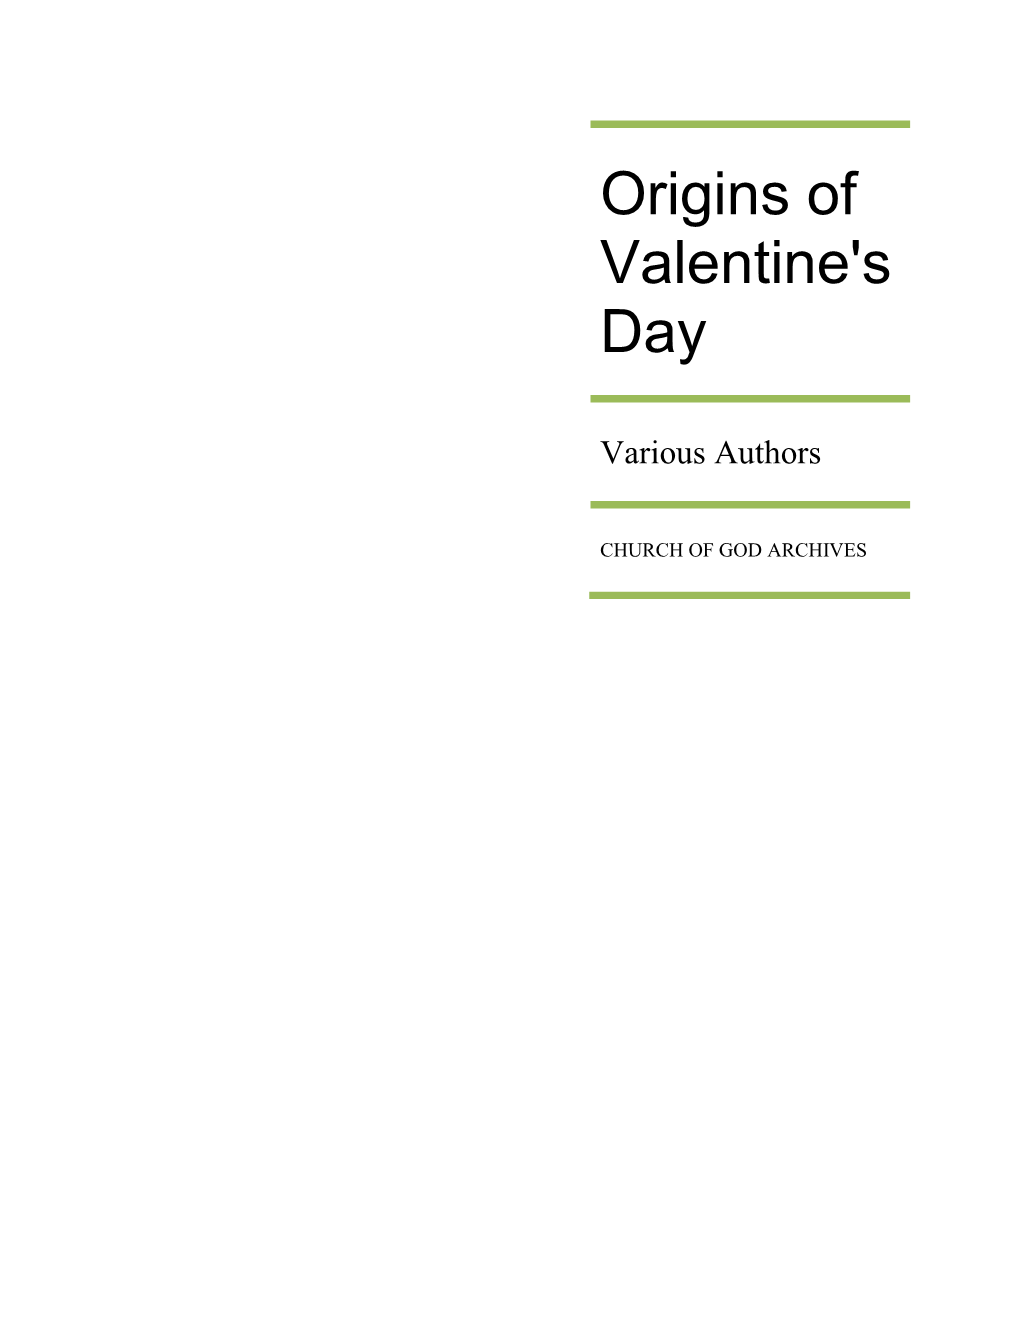 Origins of Valentine's Day